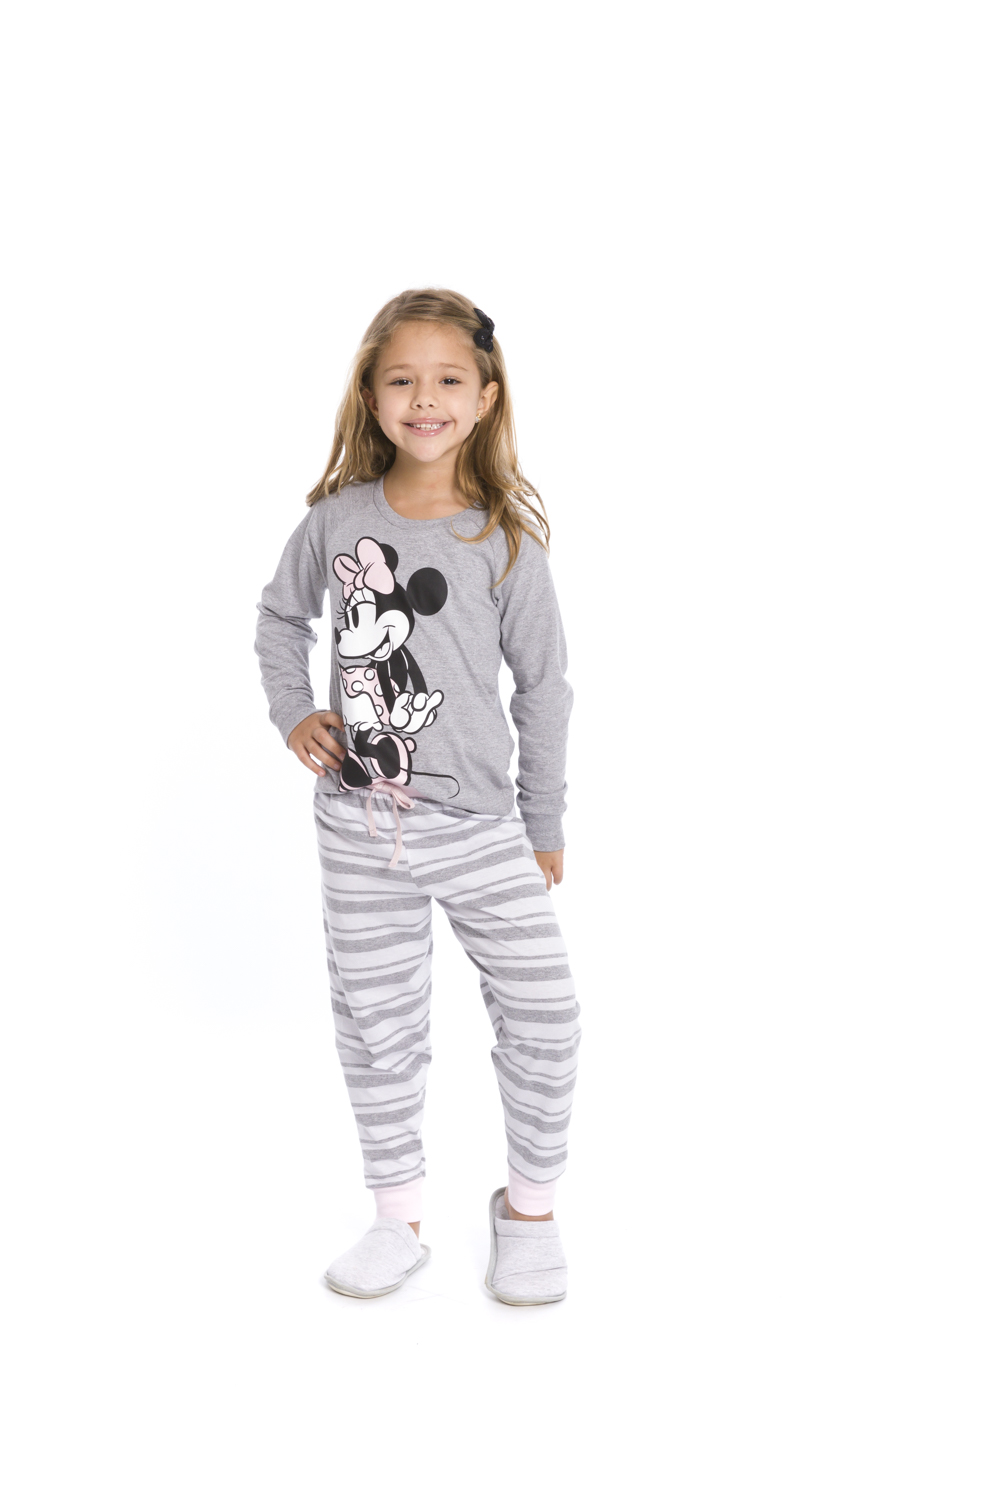 Pijama Infantil Menina Disney (Produto Oficial) - Tamanho 4 ao 10